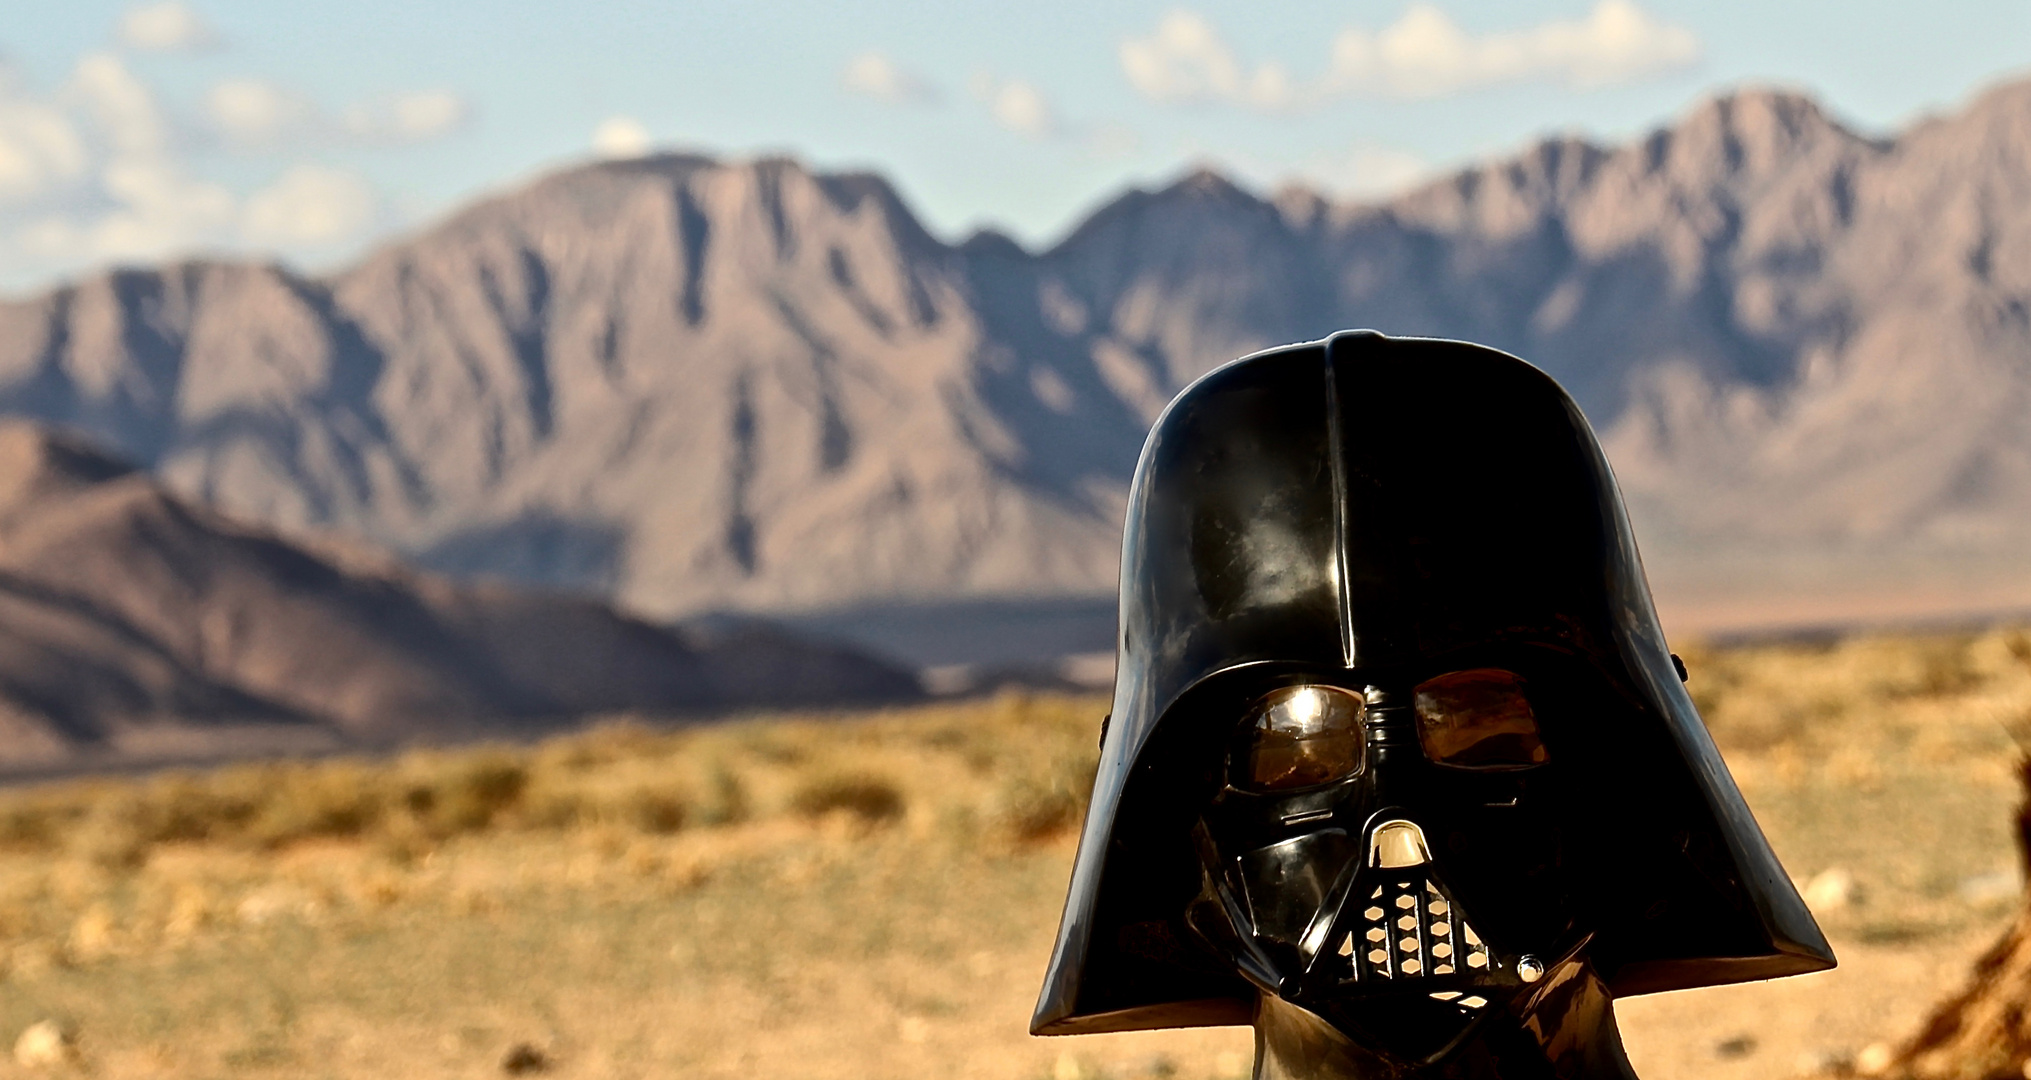 Darth Vader – Episode Namib 2